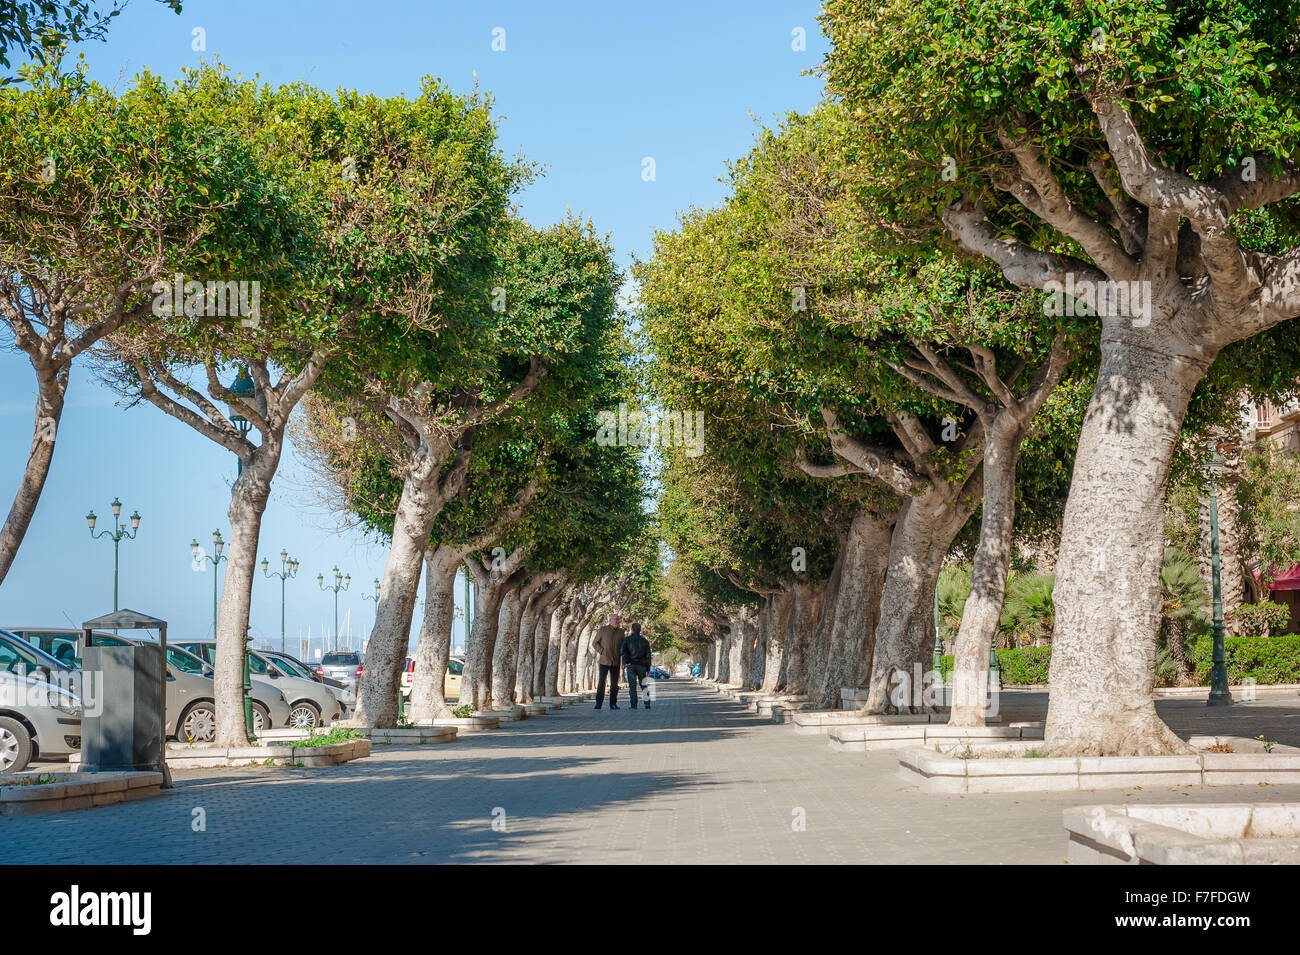 Front de mer de Trapani, un boulevard ombragé au bord de l'eau dans la zone du port de Trapani, en Sicile. Banque D'Images